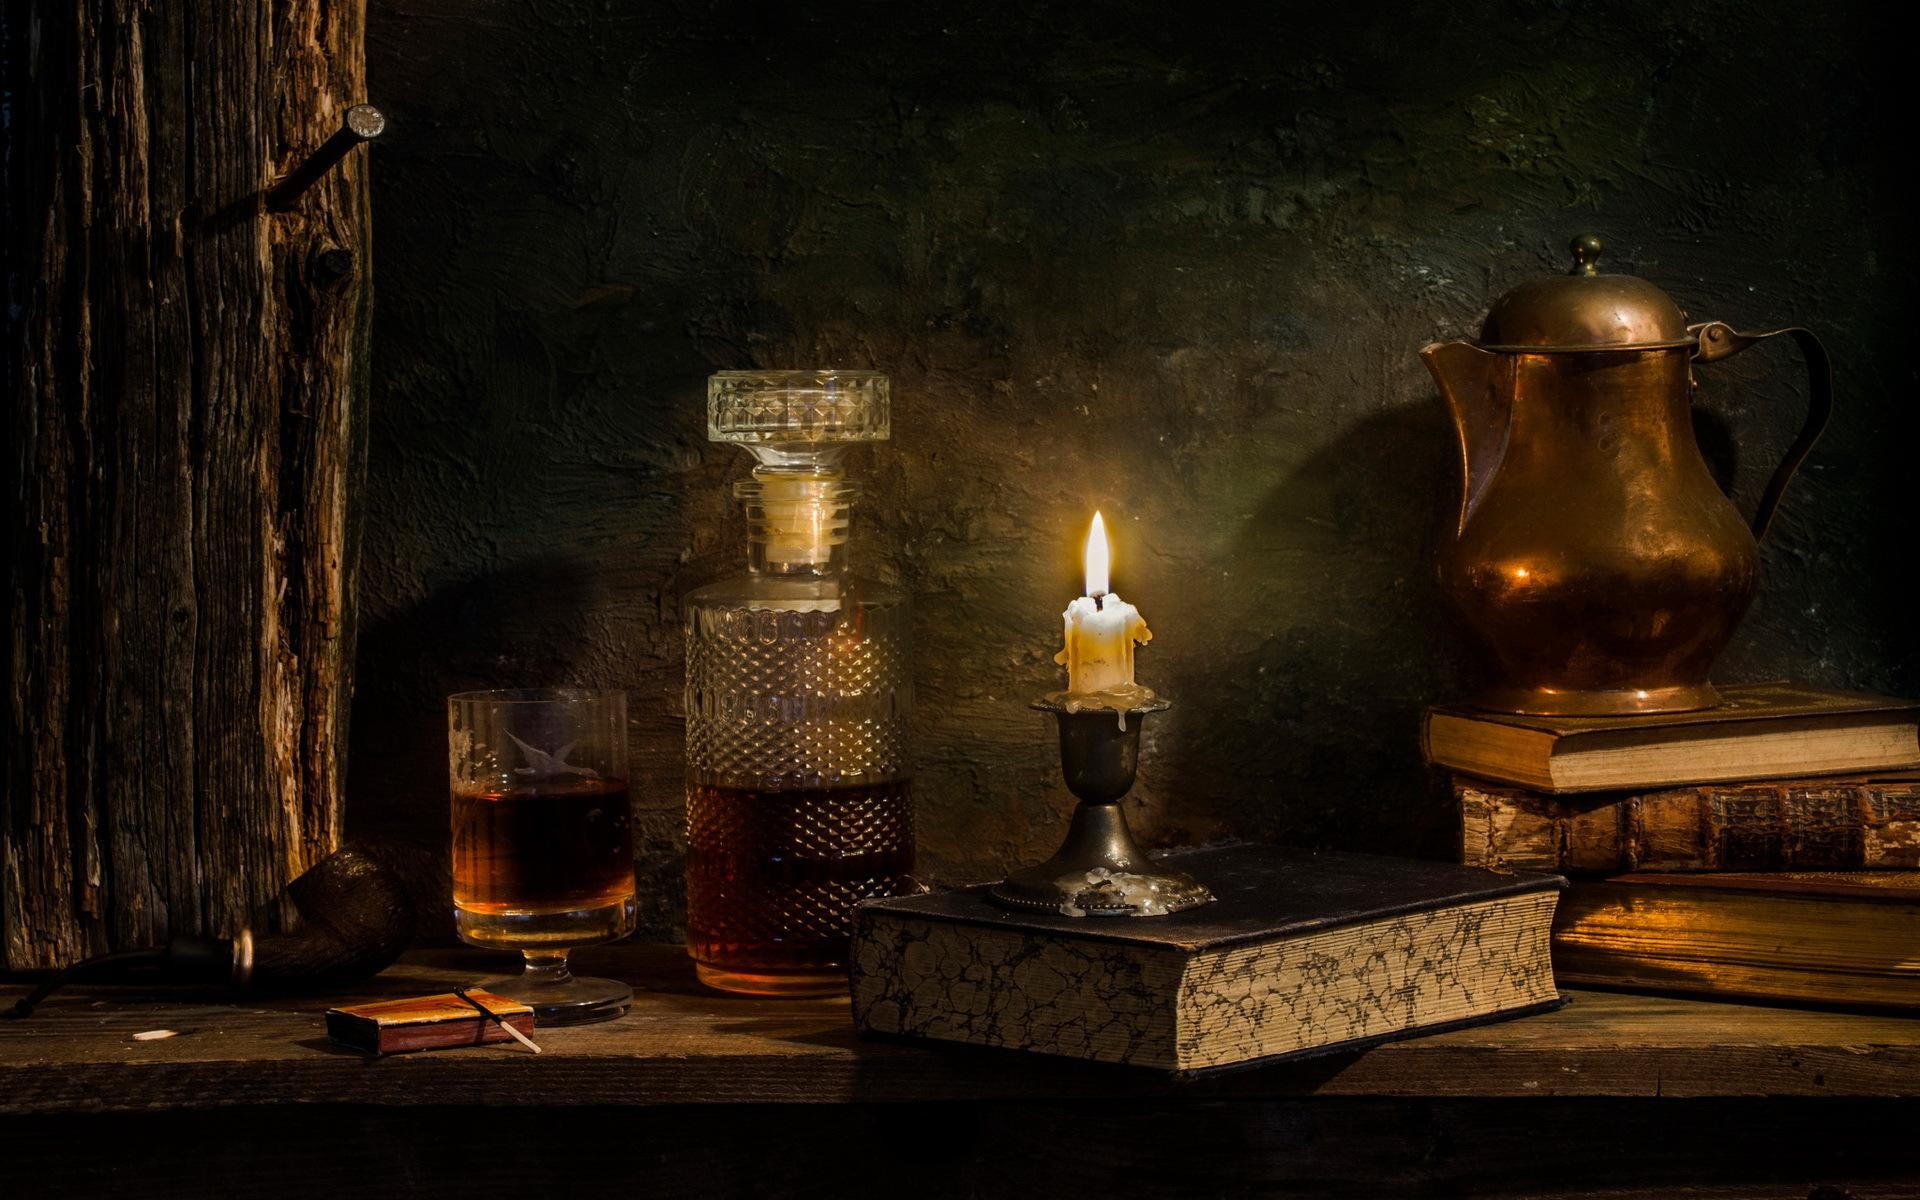 Burning candle near the whisky